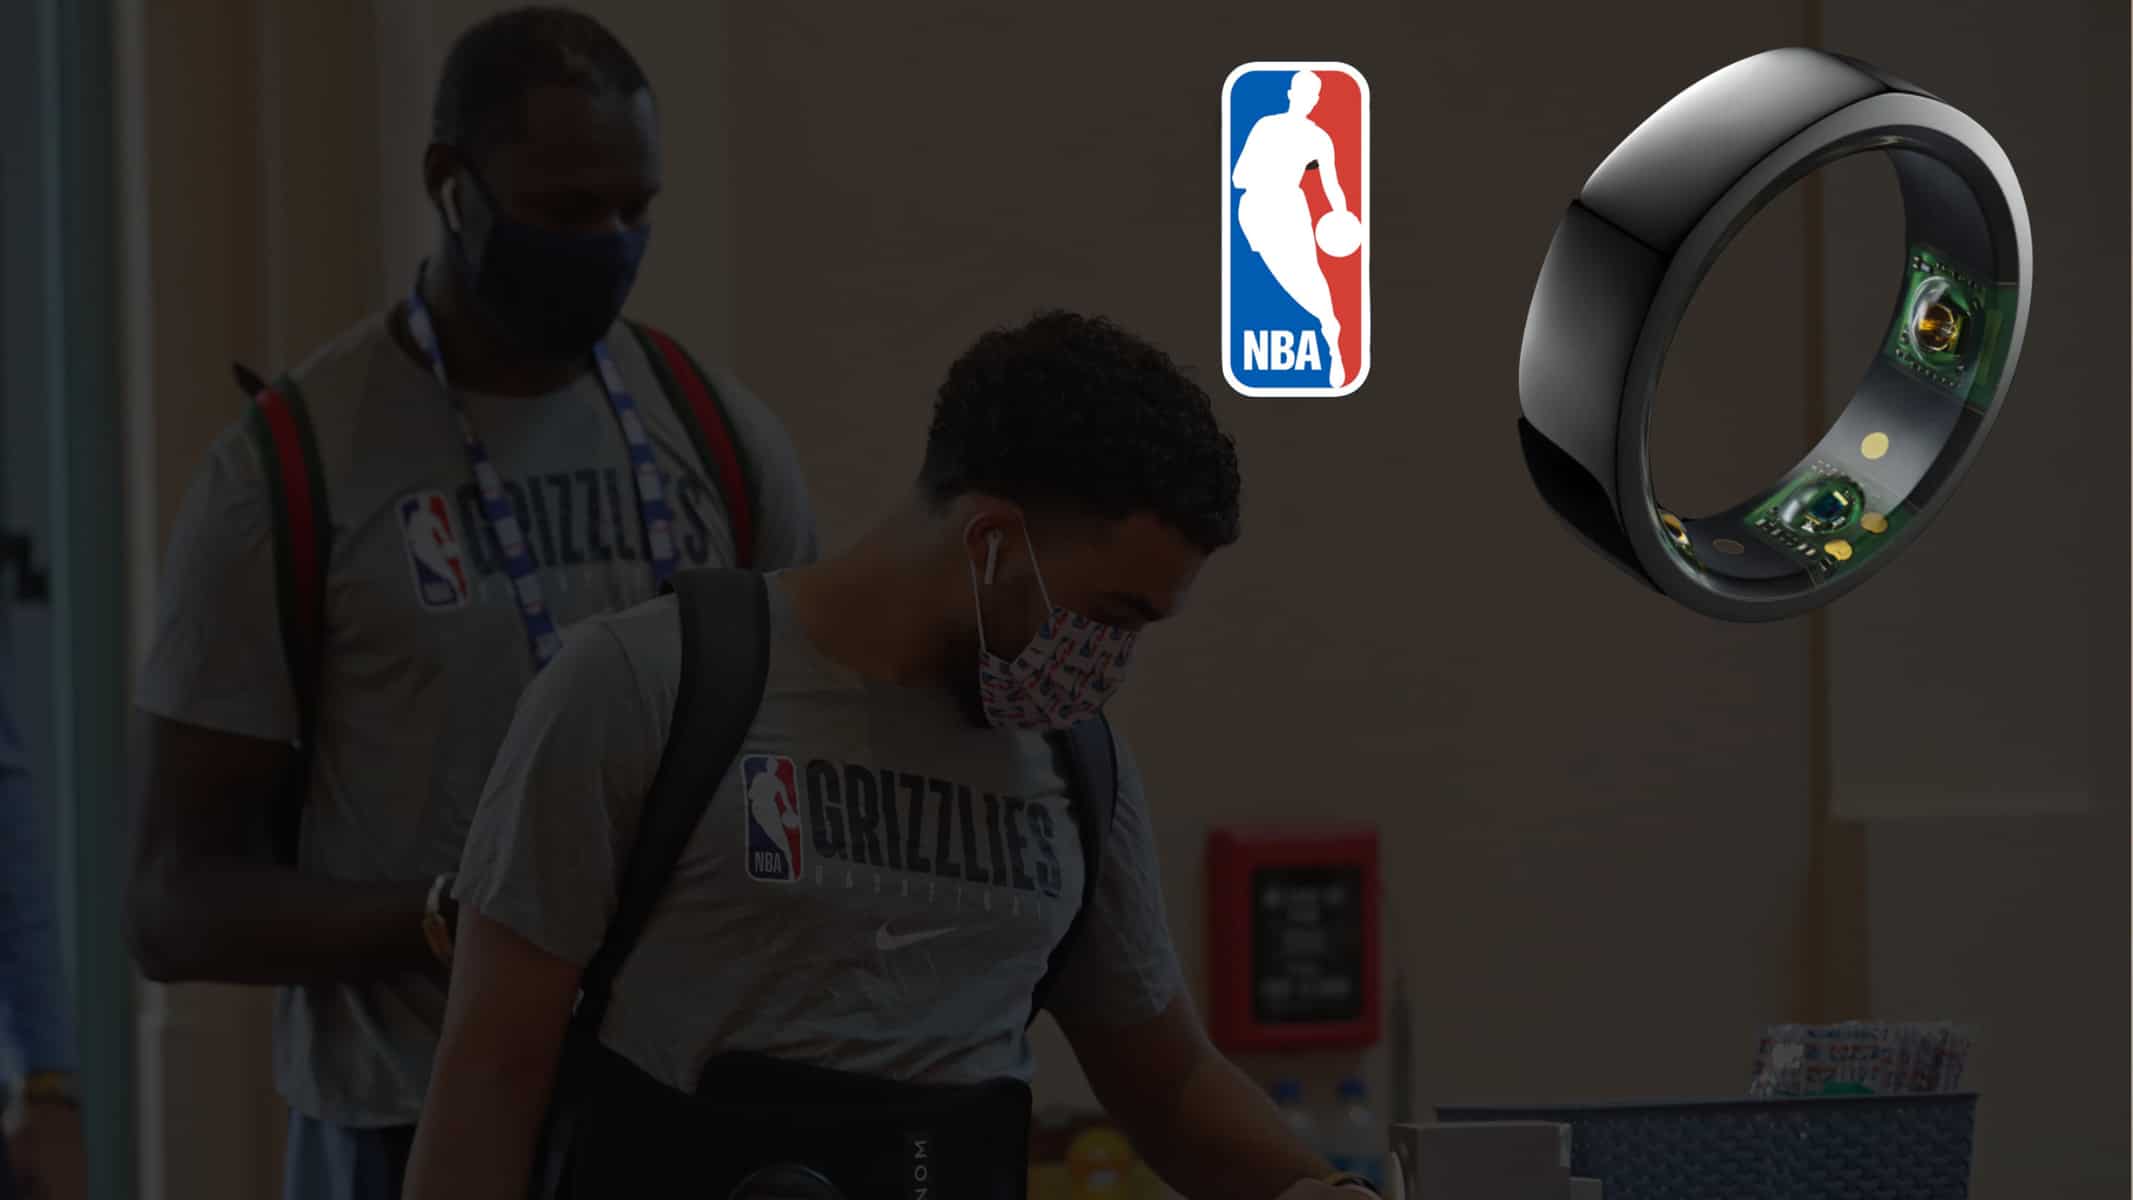 La NBA songe à implanter le port de capteurs sensoriels dès le mois de janvier